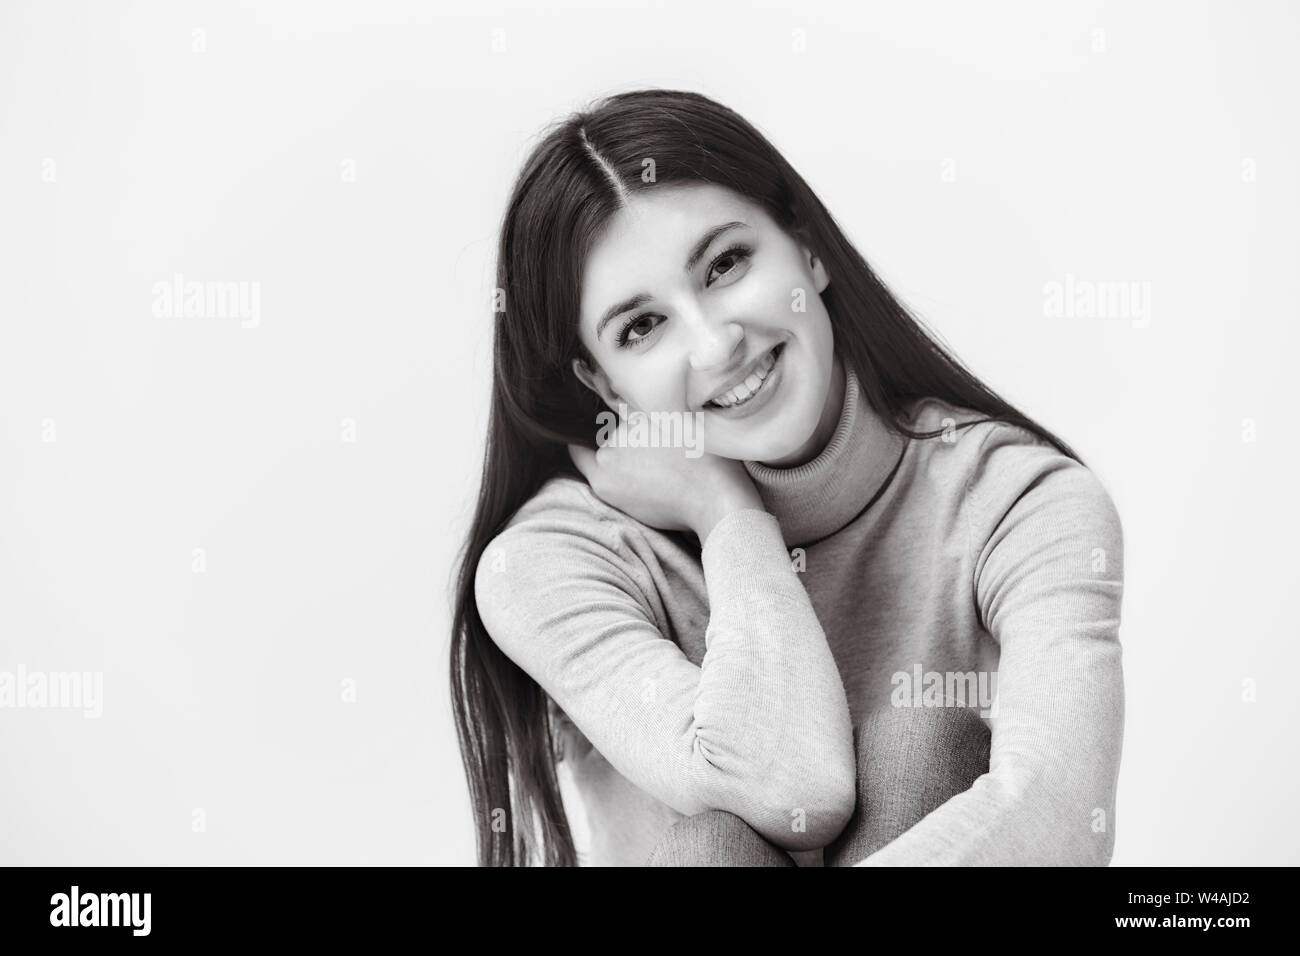 Bianco e nero ritratto di una bella donna caucasica, guardando la telecamera, felice e sorridente Foto Stock